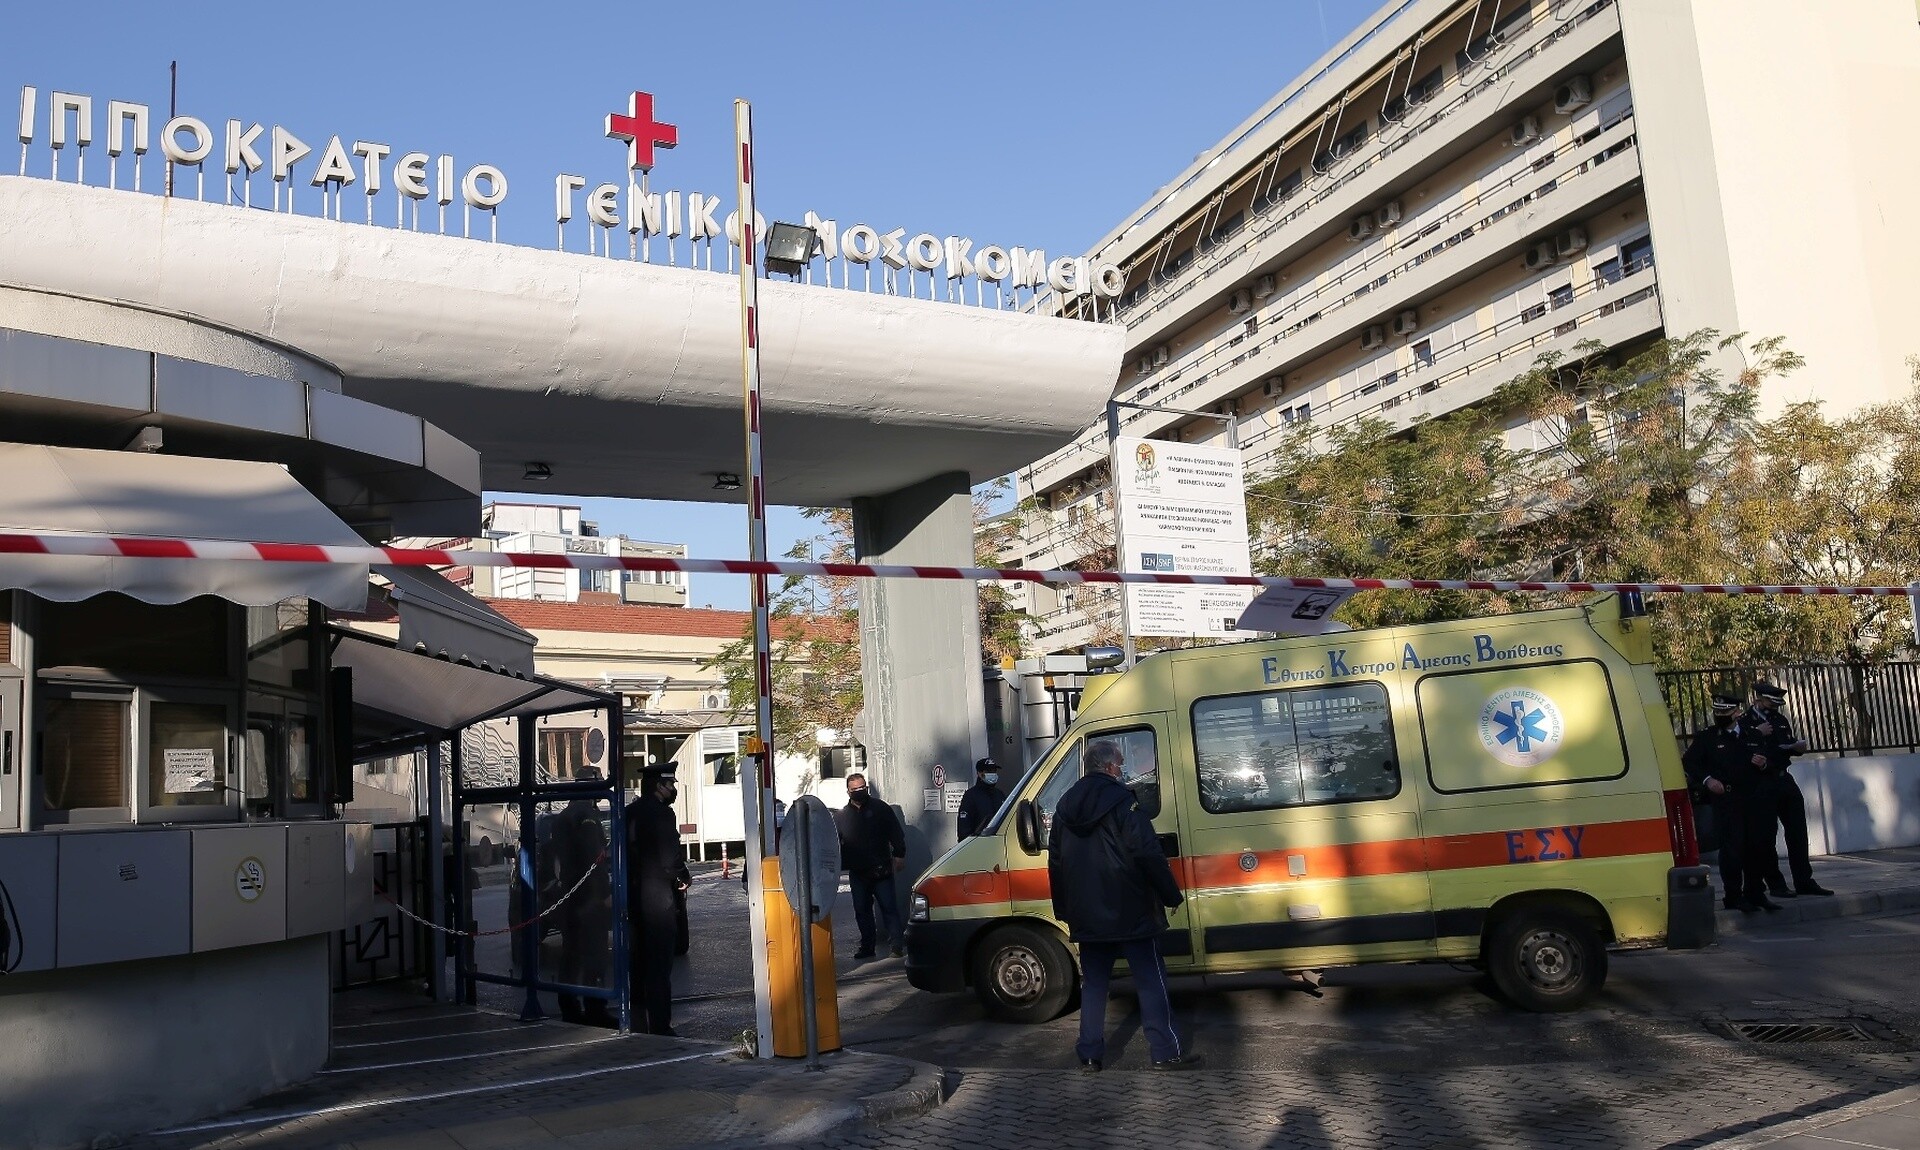 Θεσσαλονίκη: Αυτοκίνητο έπεσε πάνω στη τζαμαρία του Ιπποκράτειου Νοσοκομείου